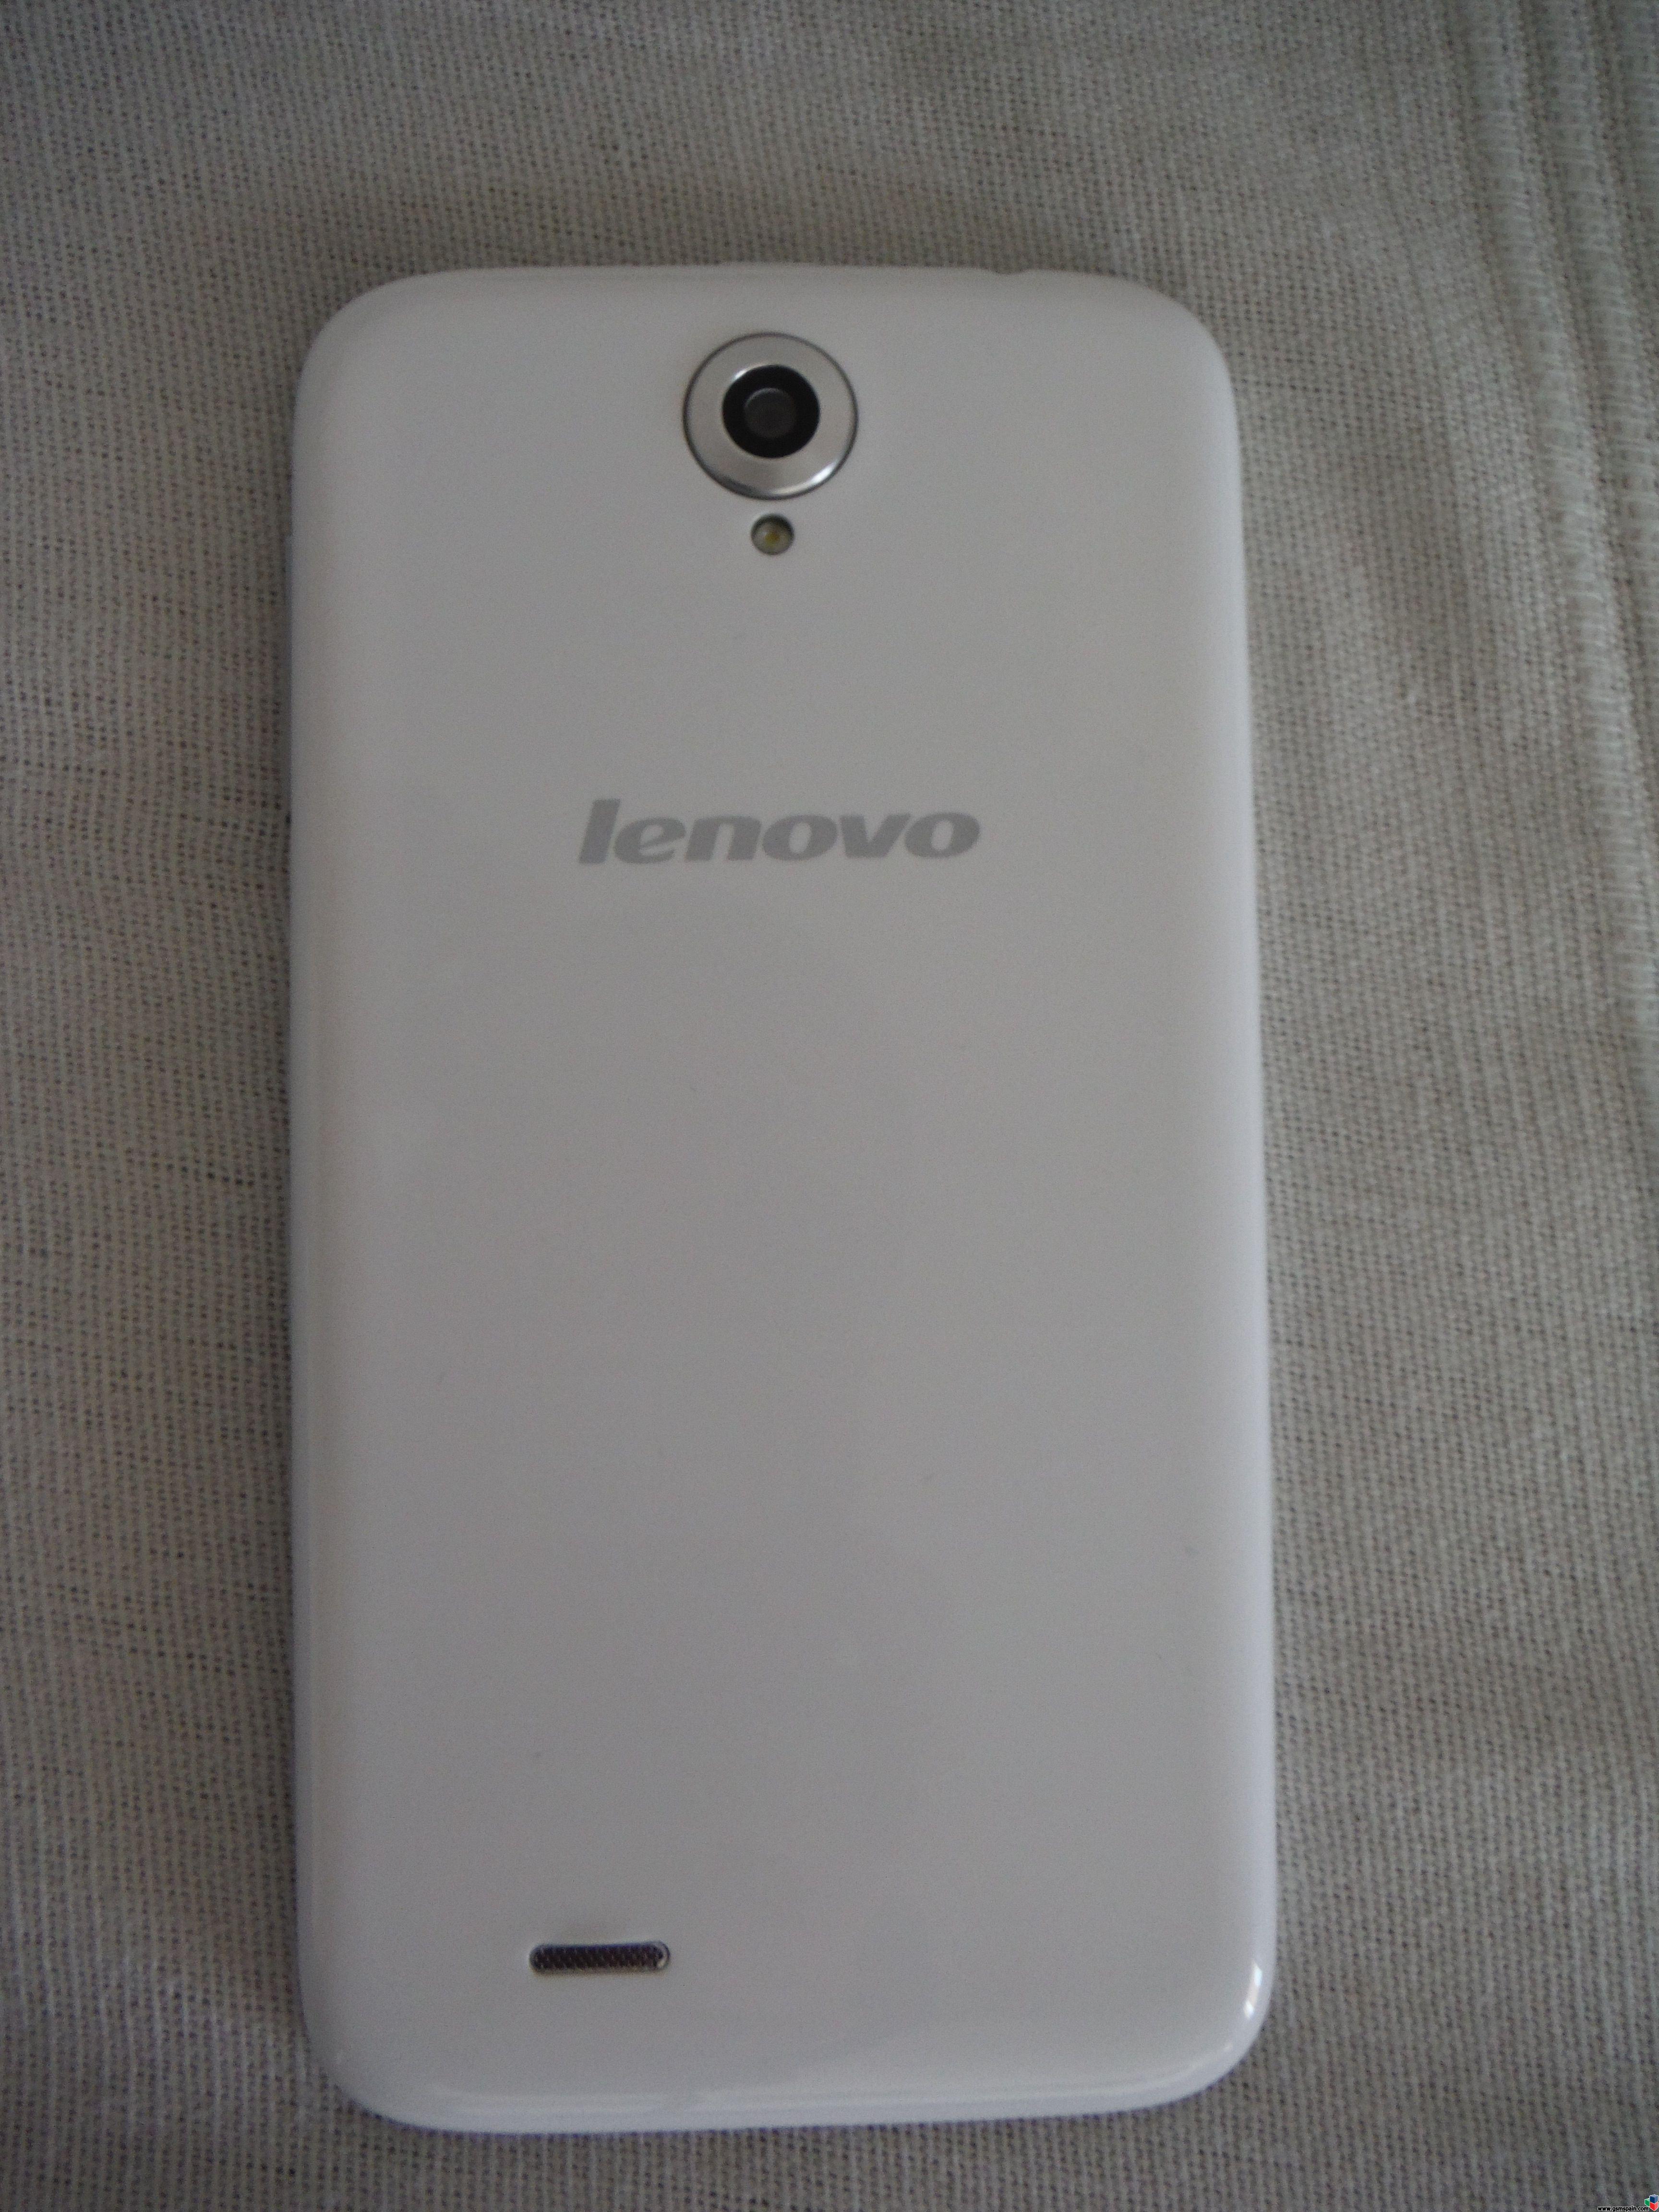 [vendo] Lenovo A850 Blanco !!